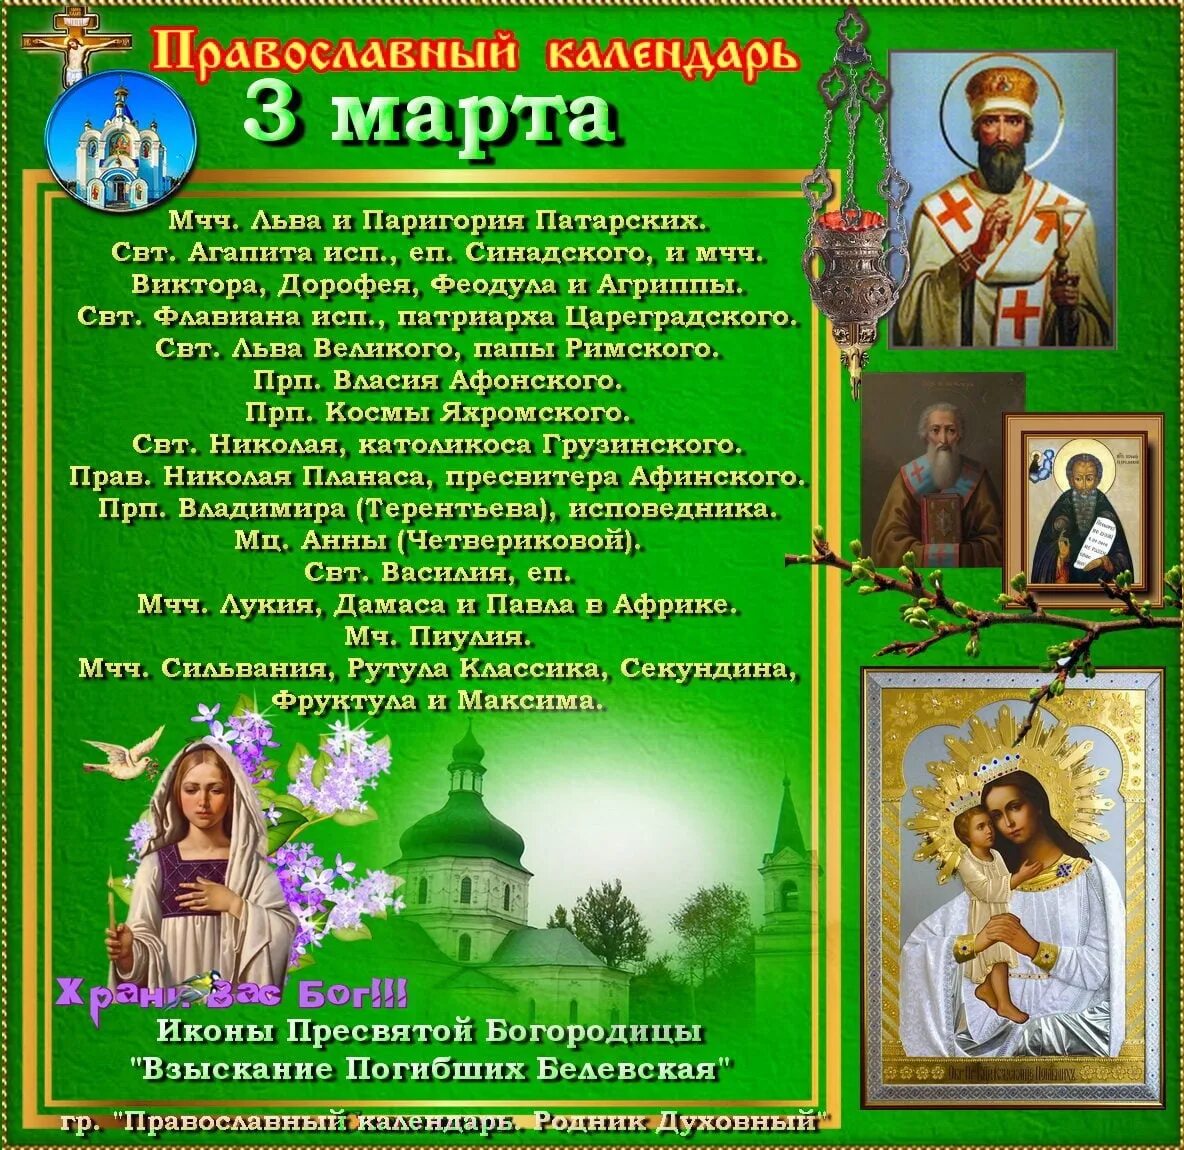 8 апреля православный календарь. Православный календарь на март.